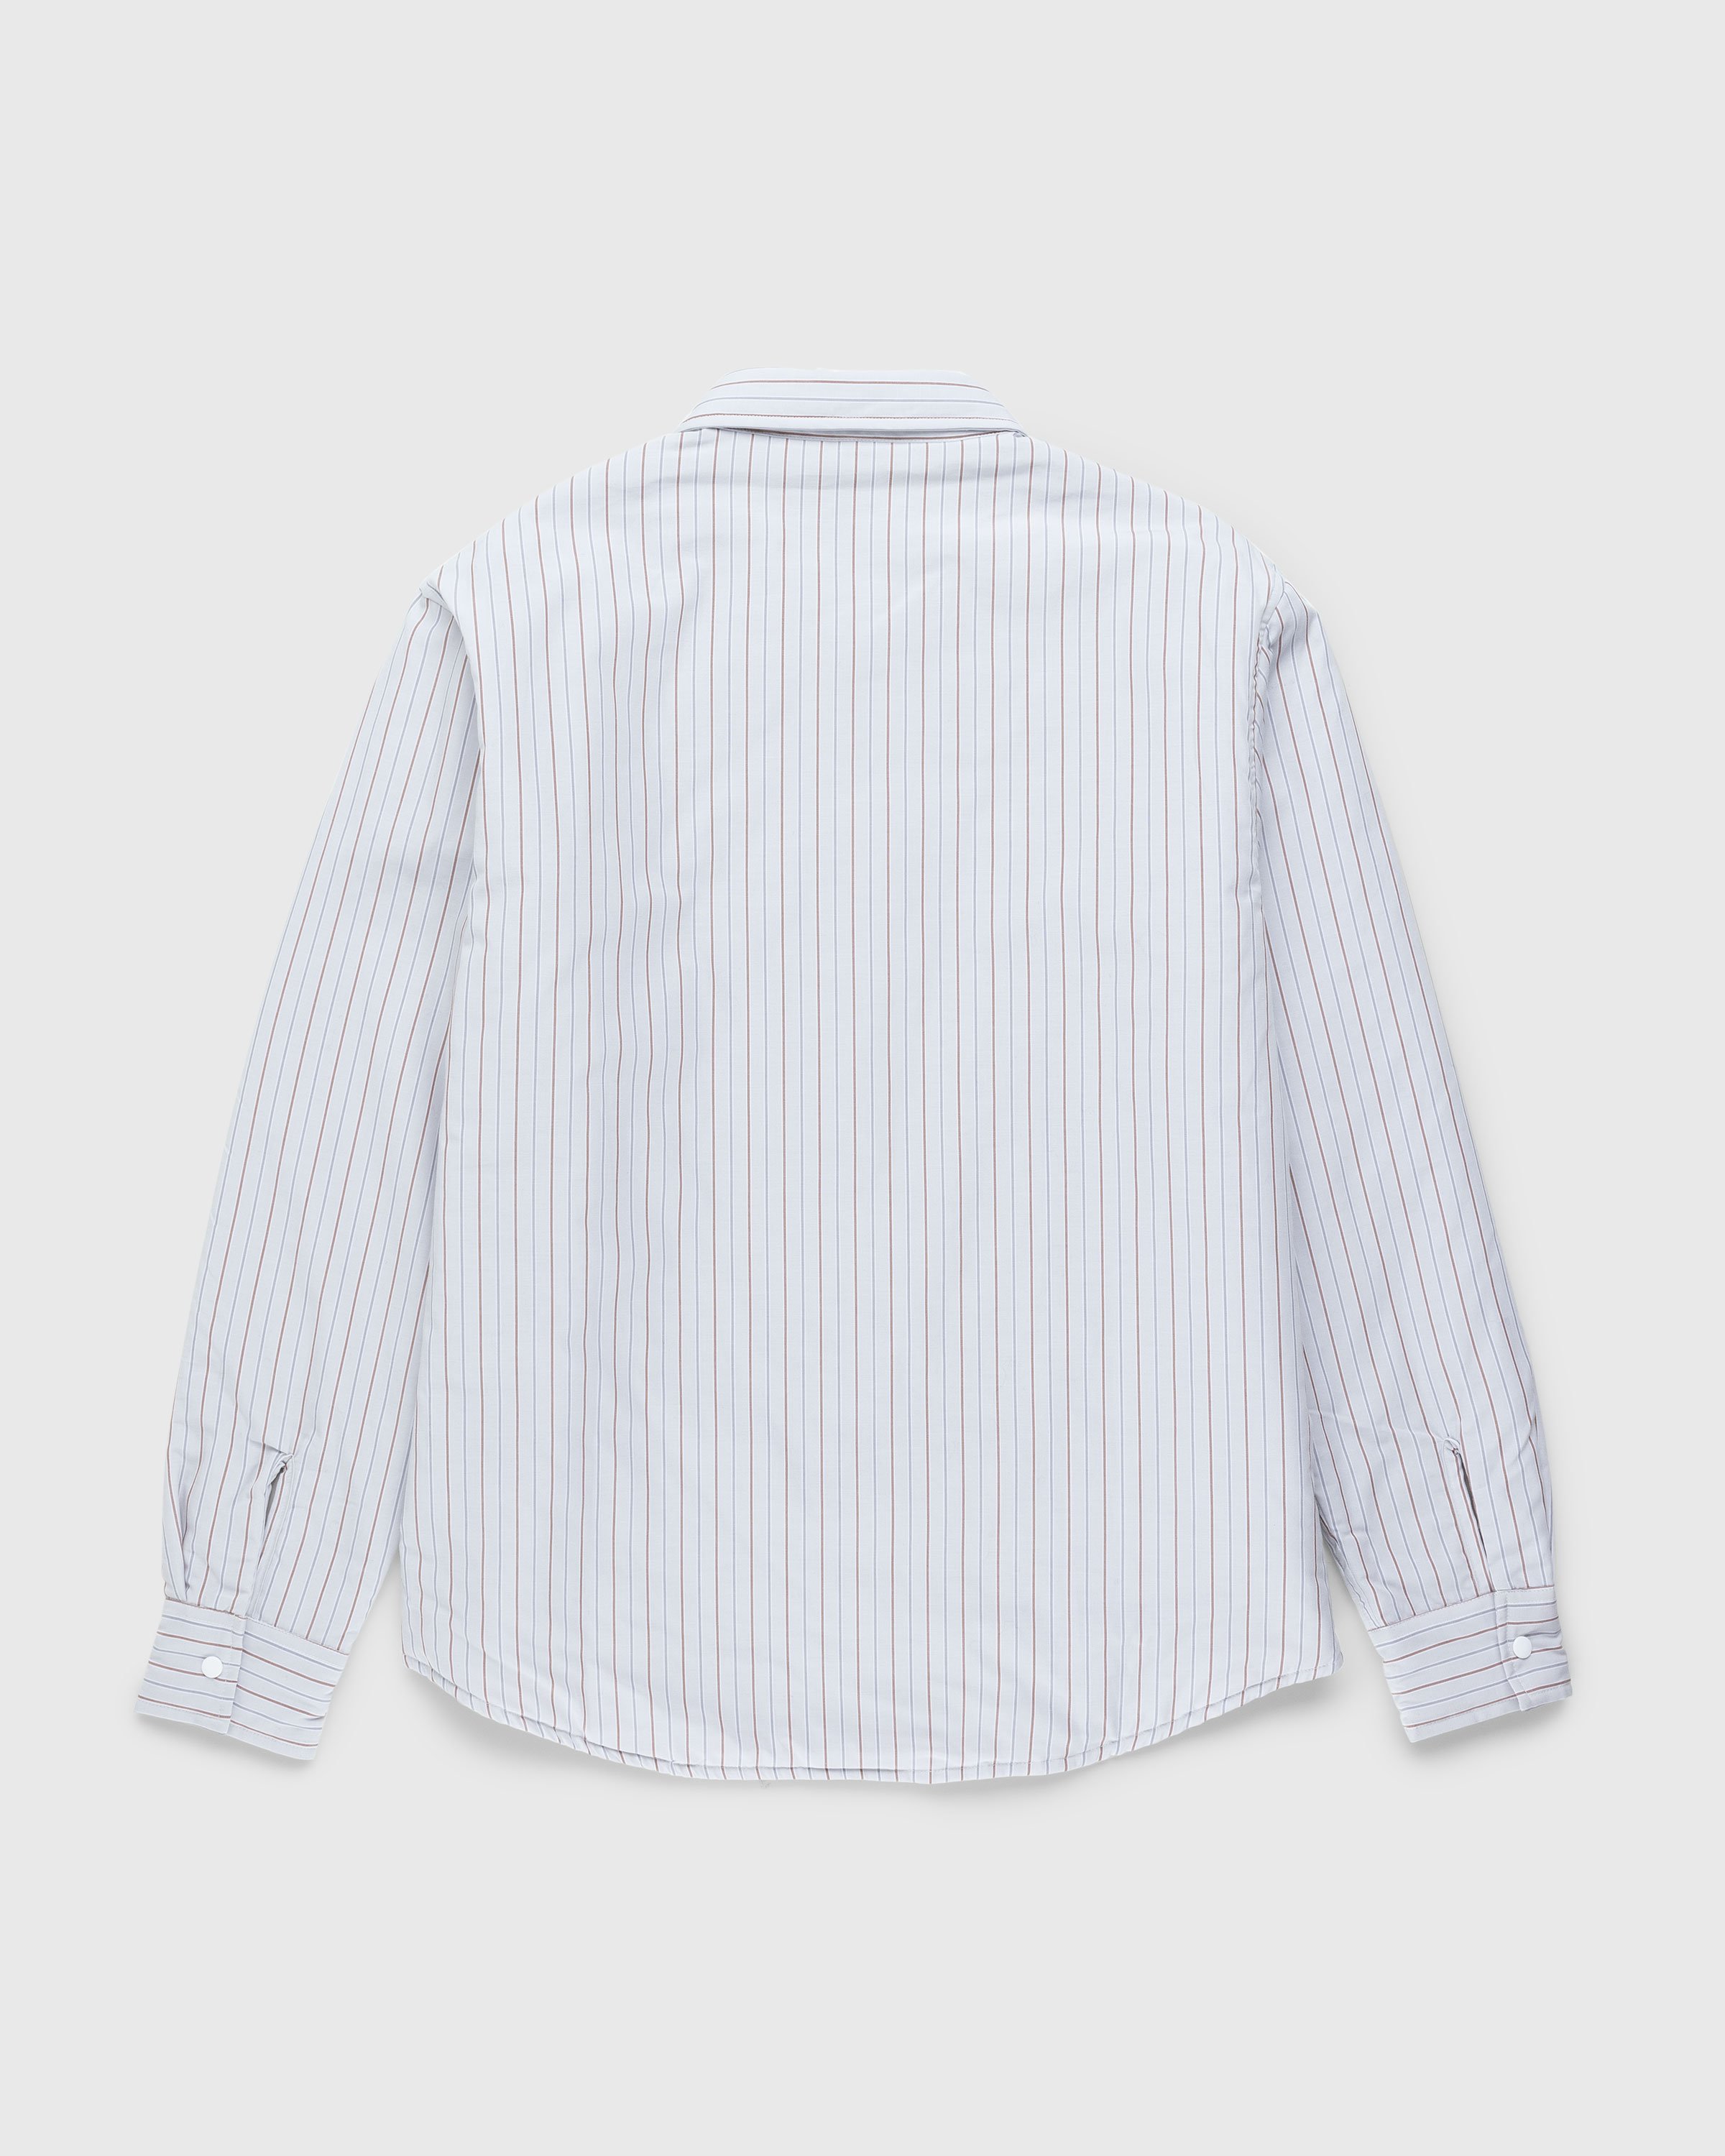 Highsnobiety HS05 - Insulated Shirt Jacket Stripes - Clothing - Beige - Image 2